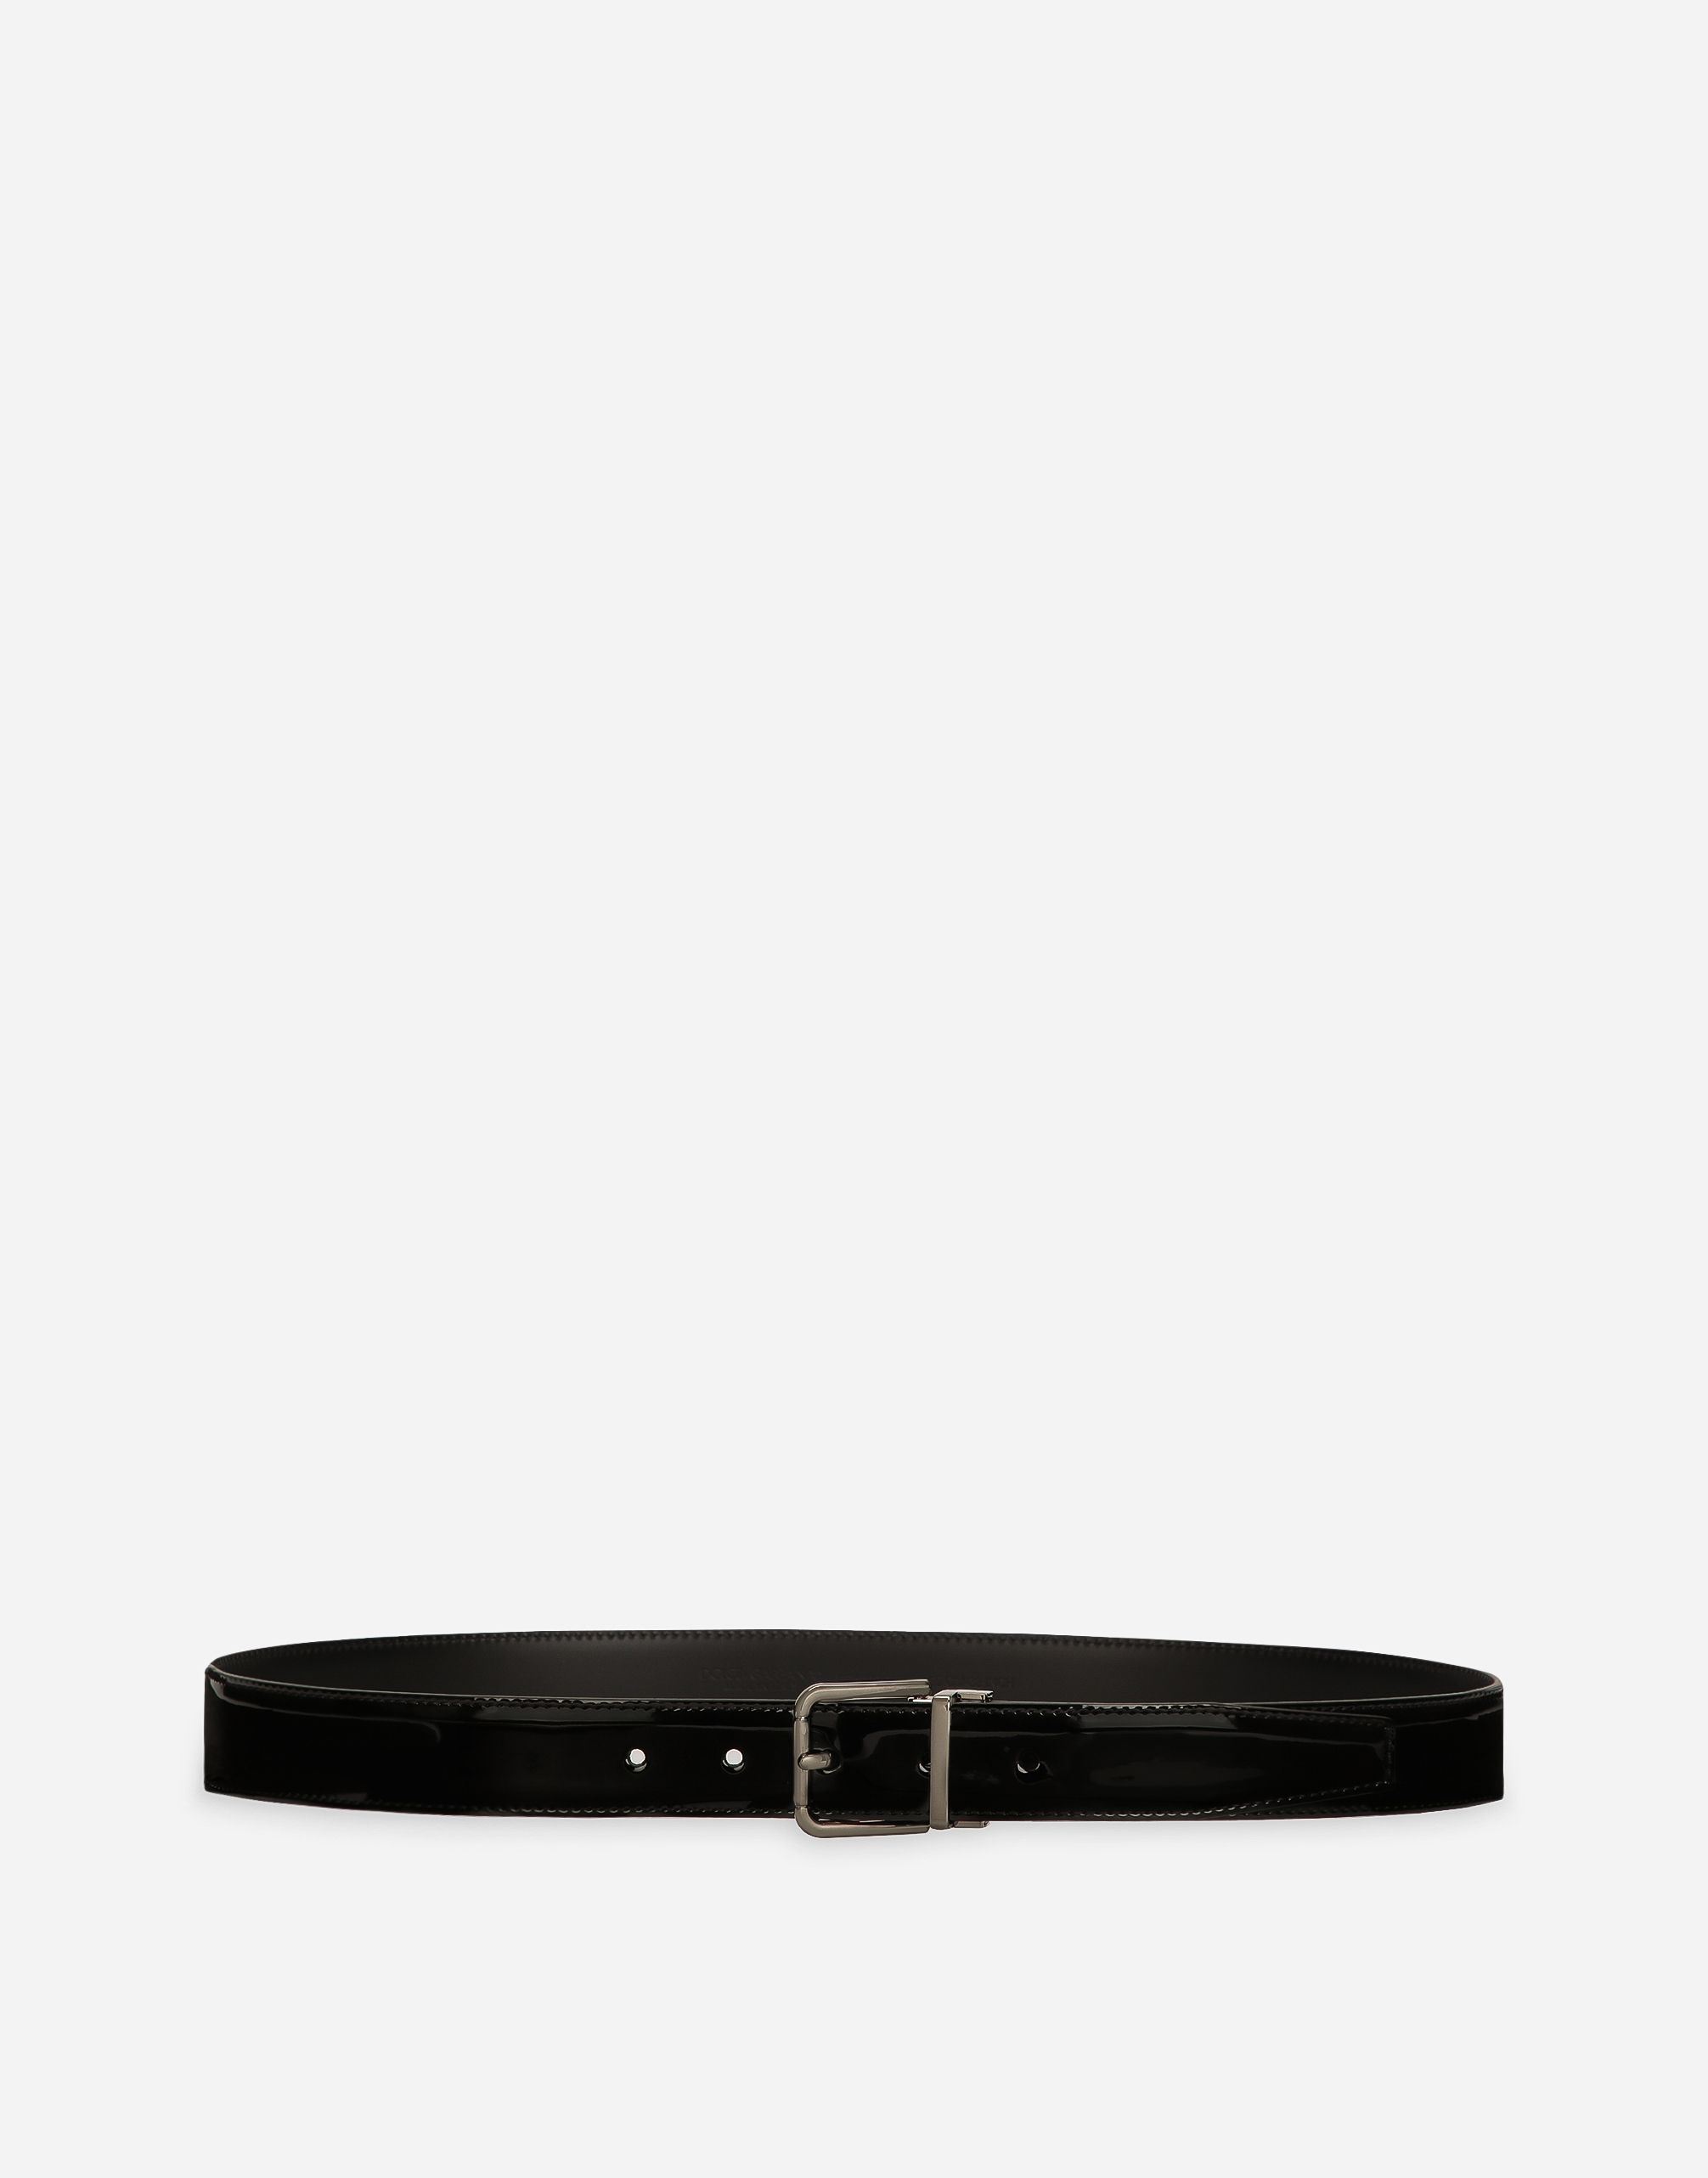 Dolce & Gabbana Patent Calfskin Belt In Black